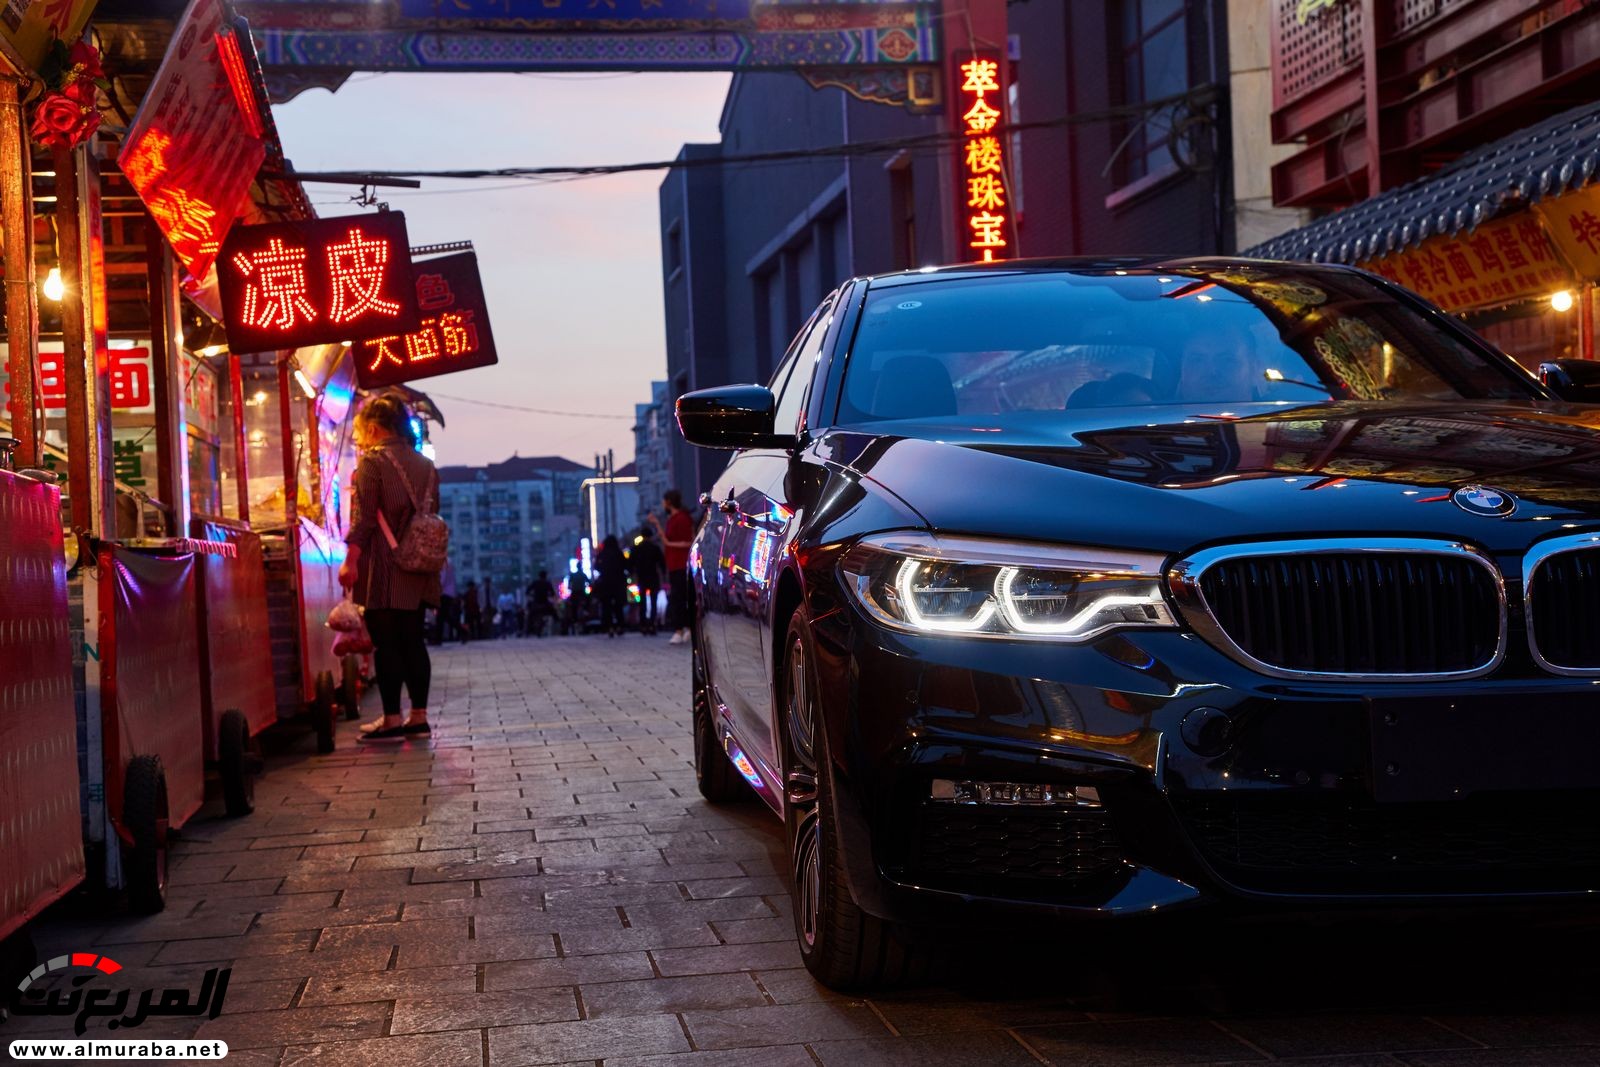 بي إم دبليو أصبحت صانعة السيارات الفاخرة الأكثر مبيعاً في الصين 6